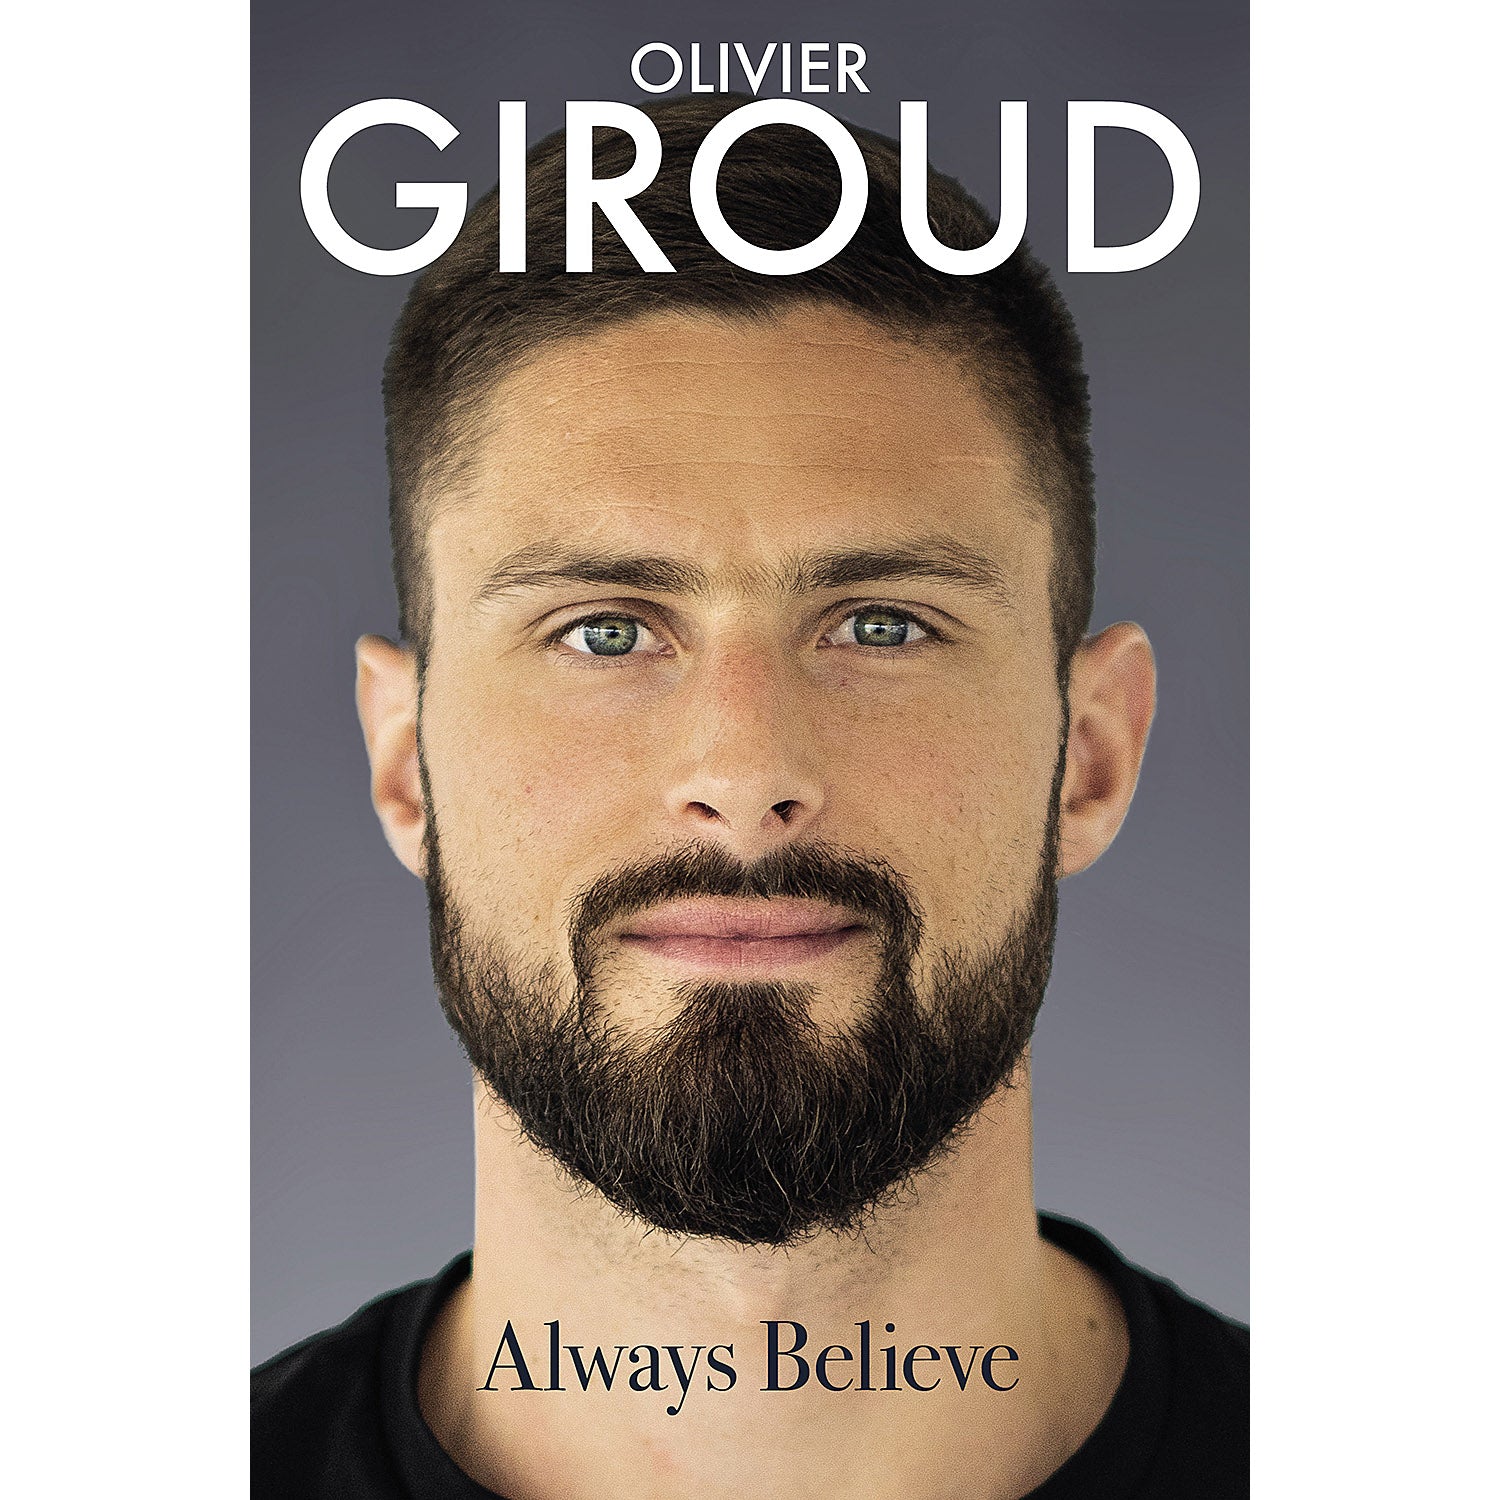 Olivier Giroud – Always Believe – Autobiography